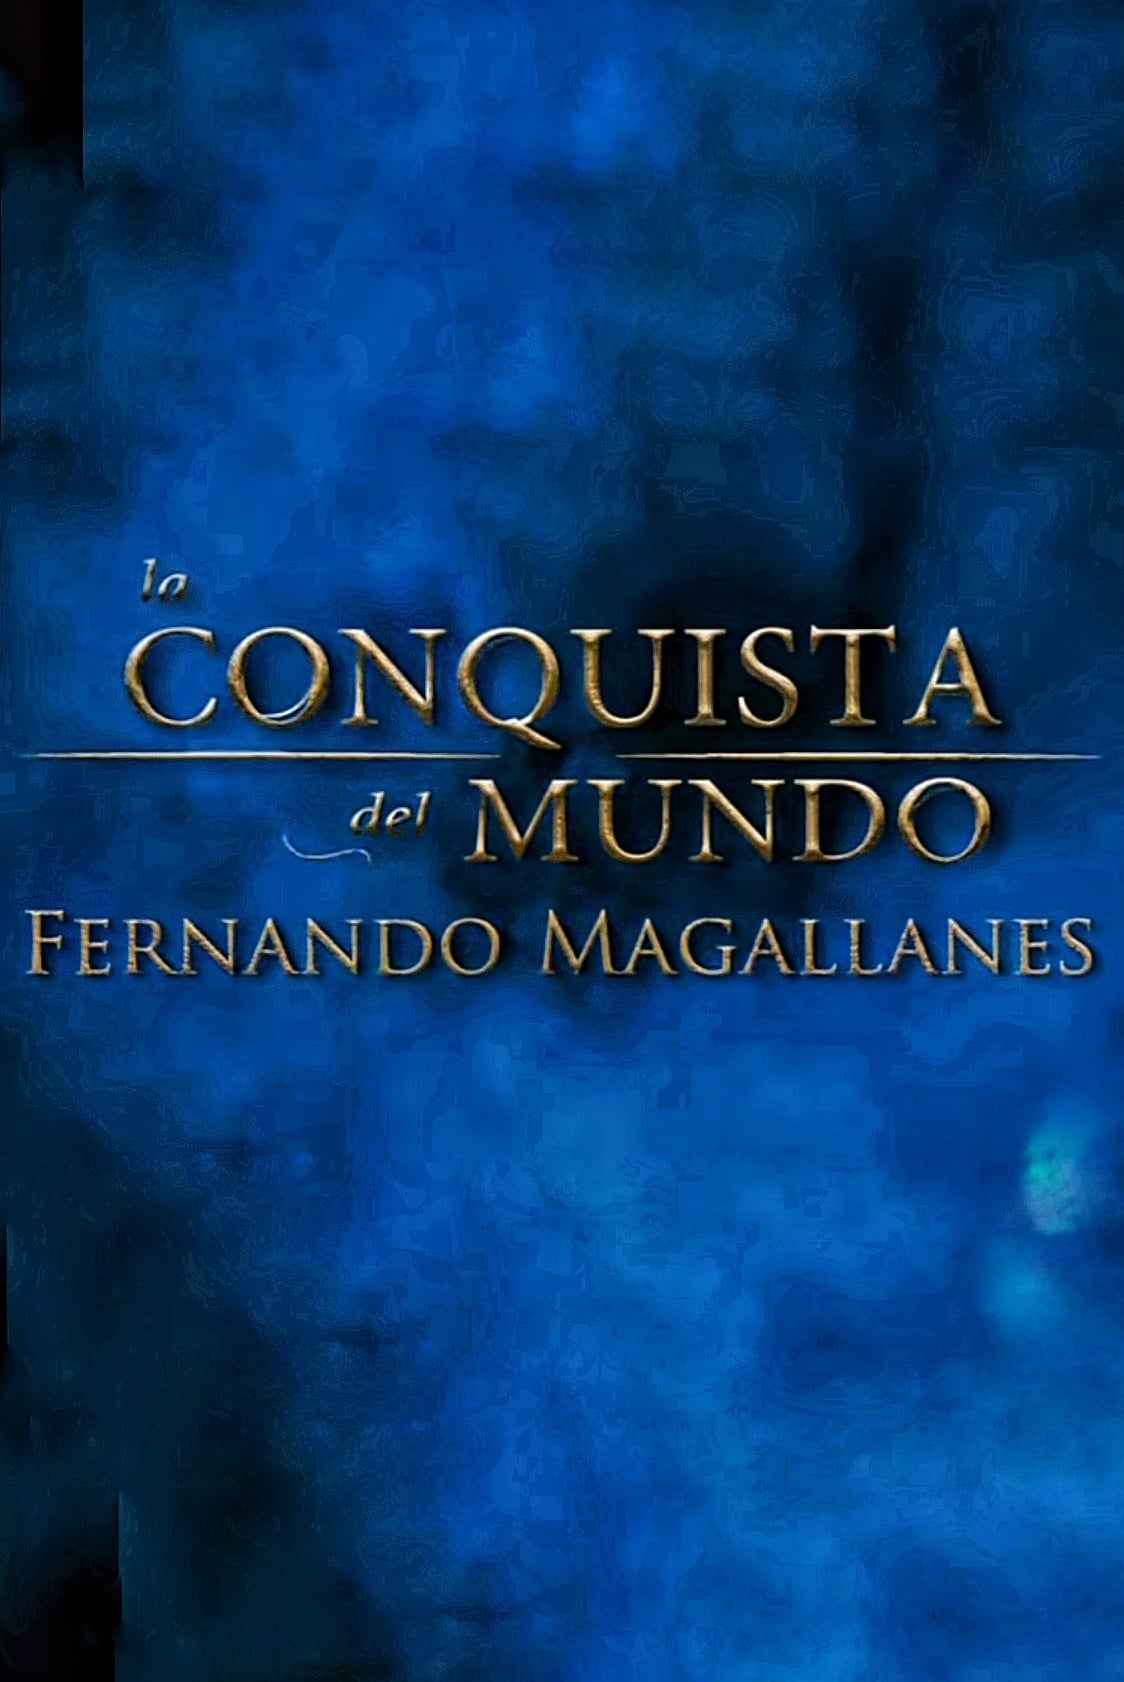 La Conquista del Mundo, Fernando de Magallanes.